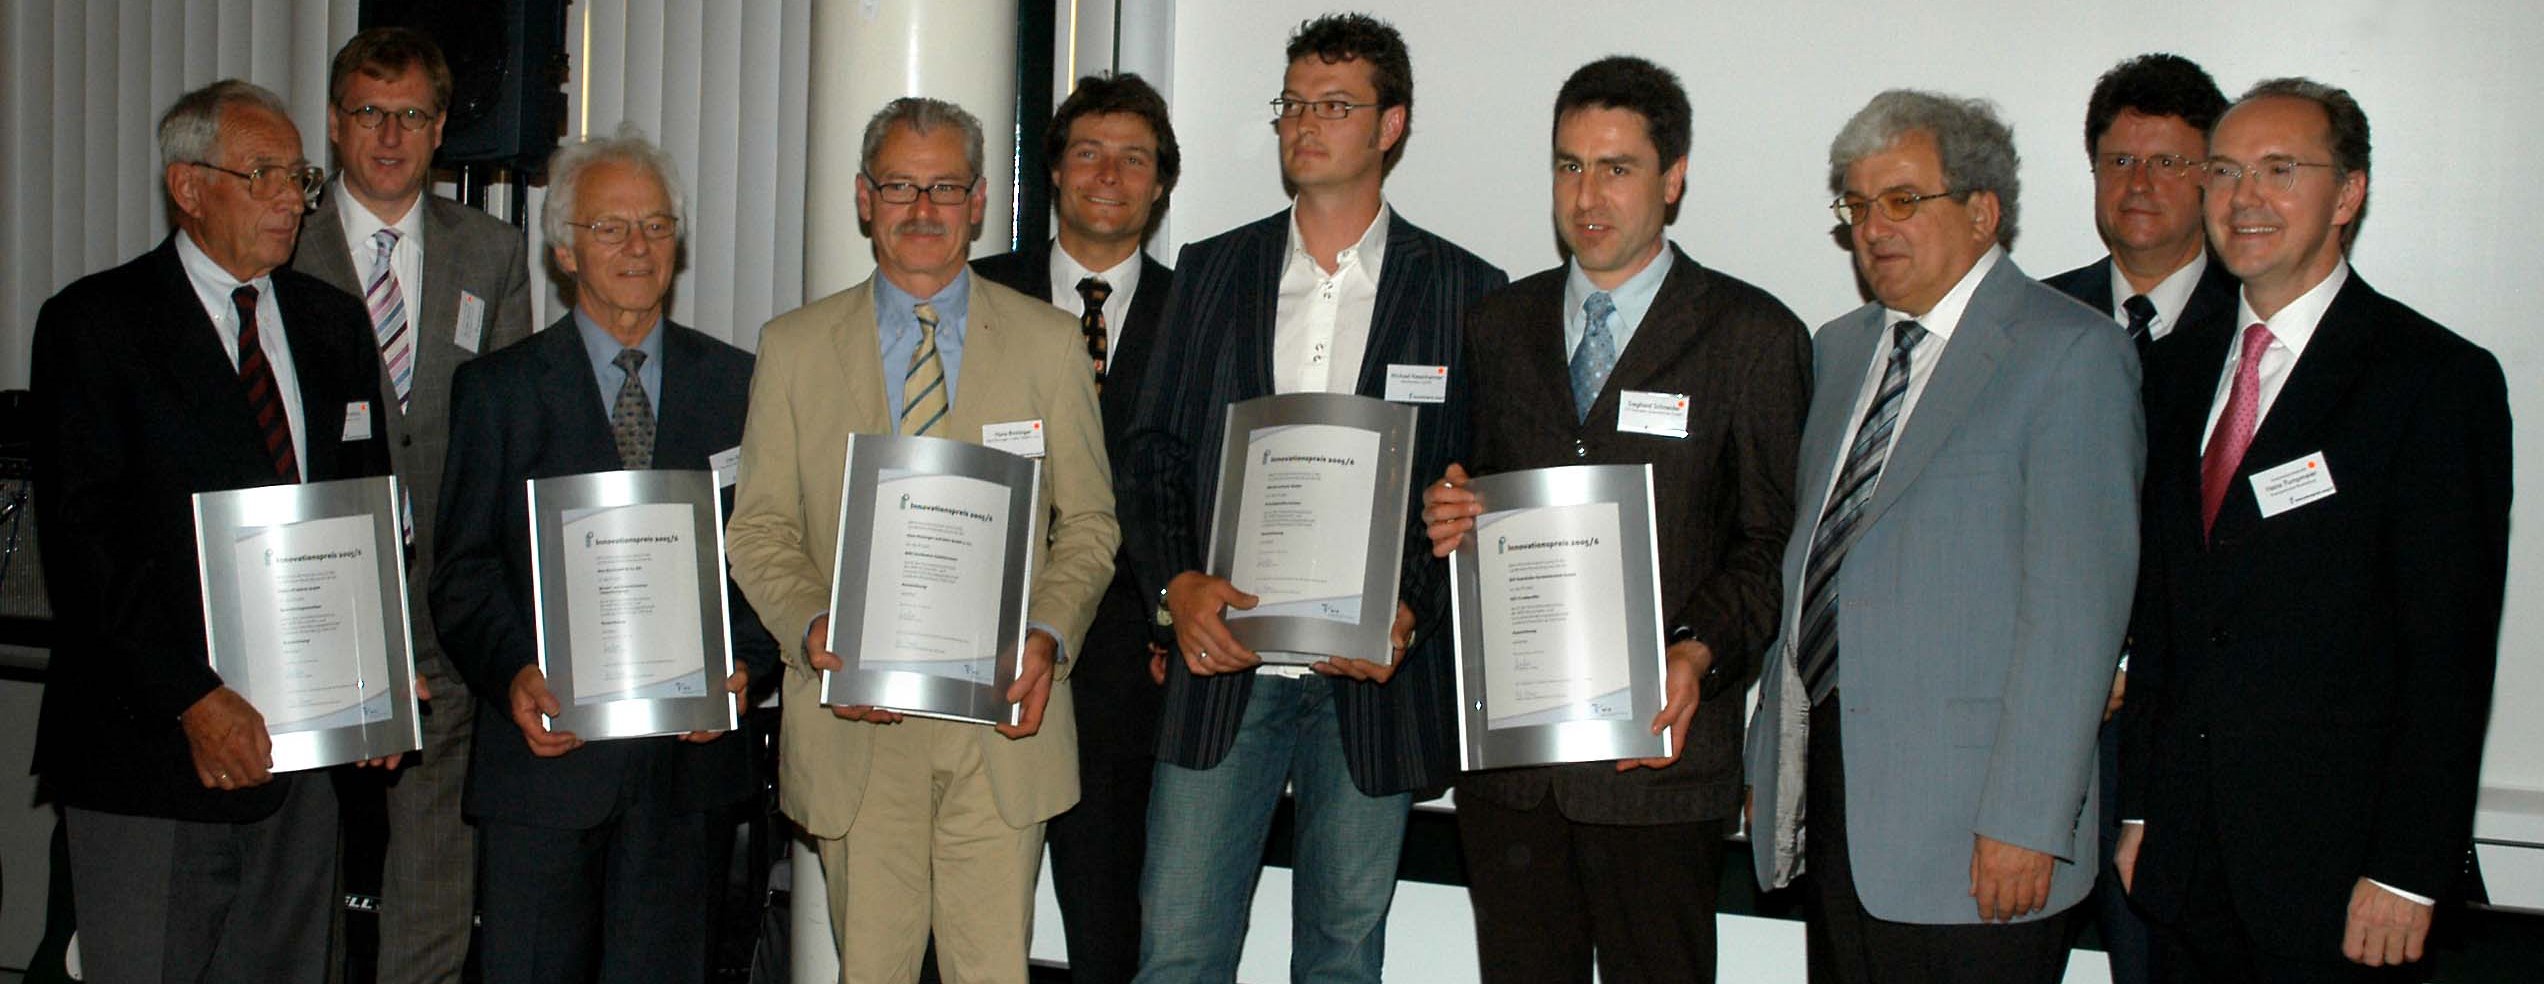 Innovationspreis 2005/2006